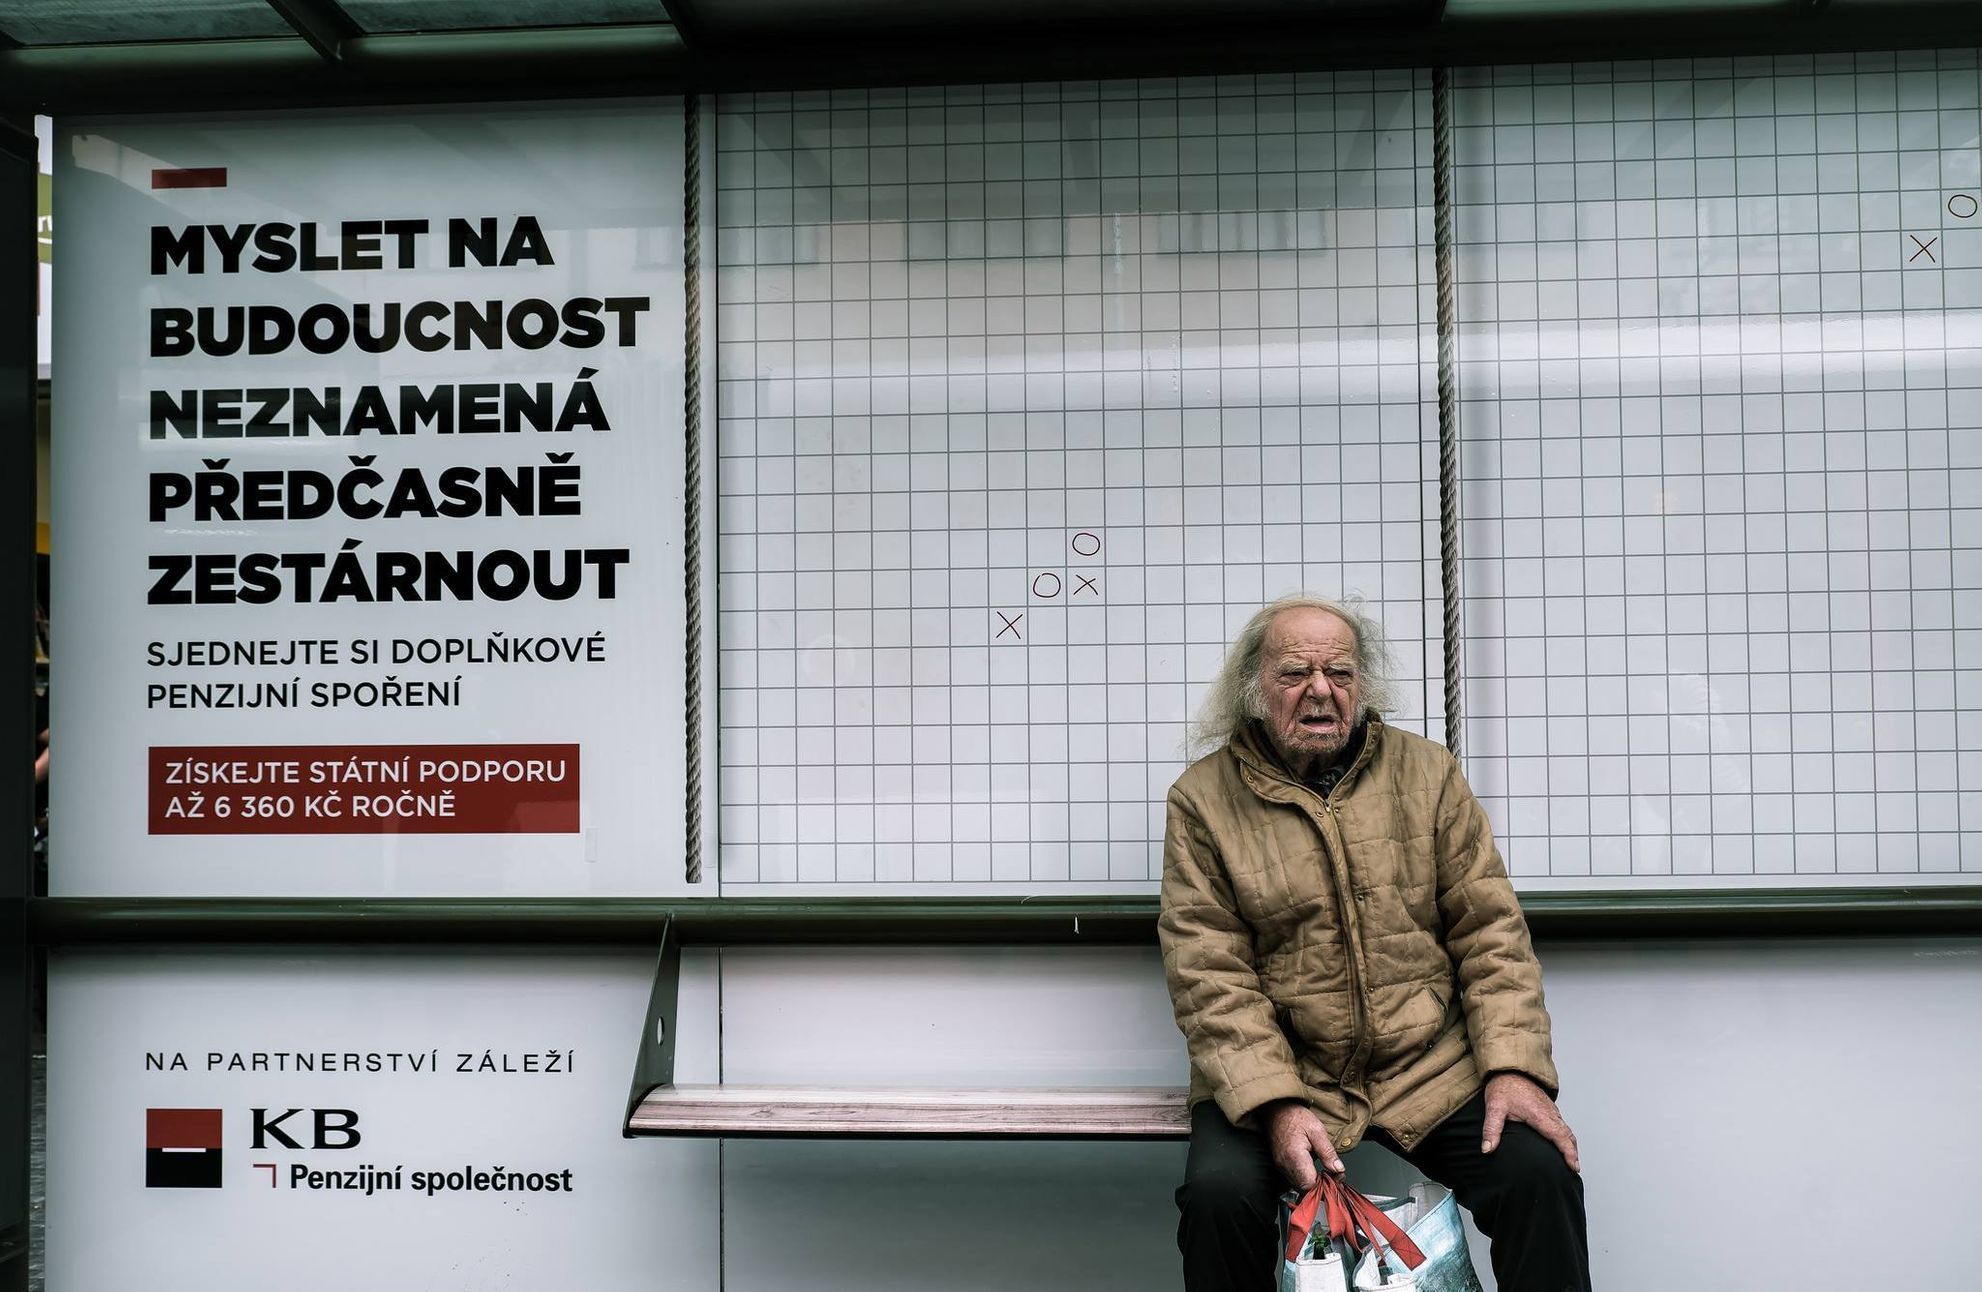 Street Report - nejlepší fotky ze skupiny českých street fotografů